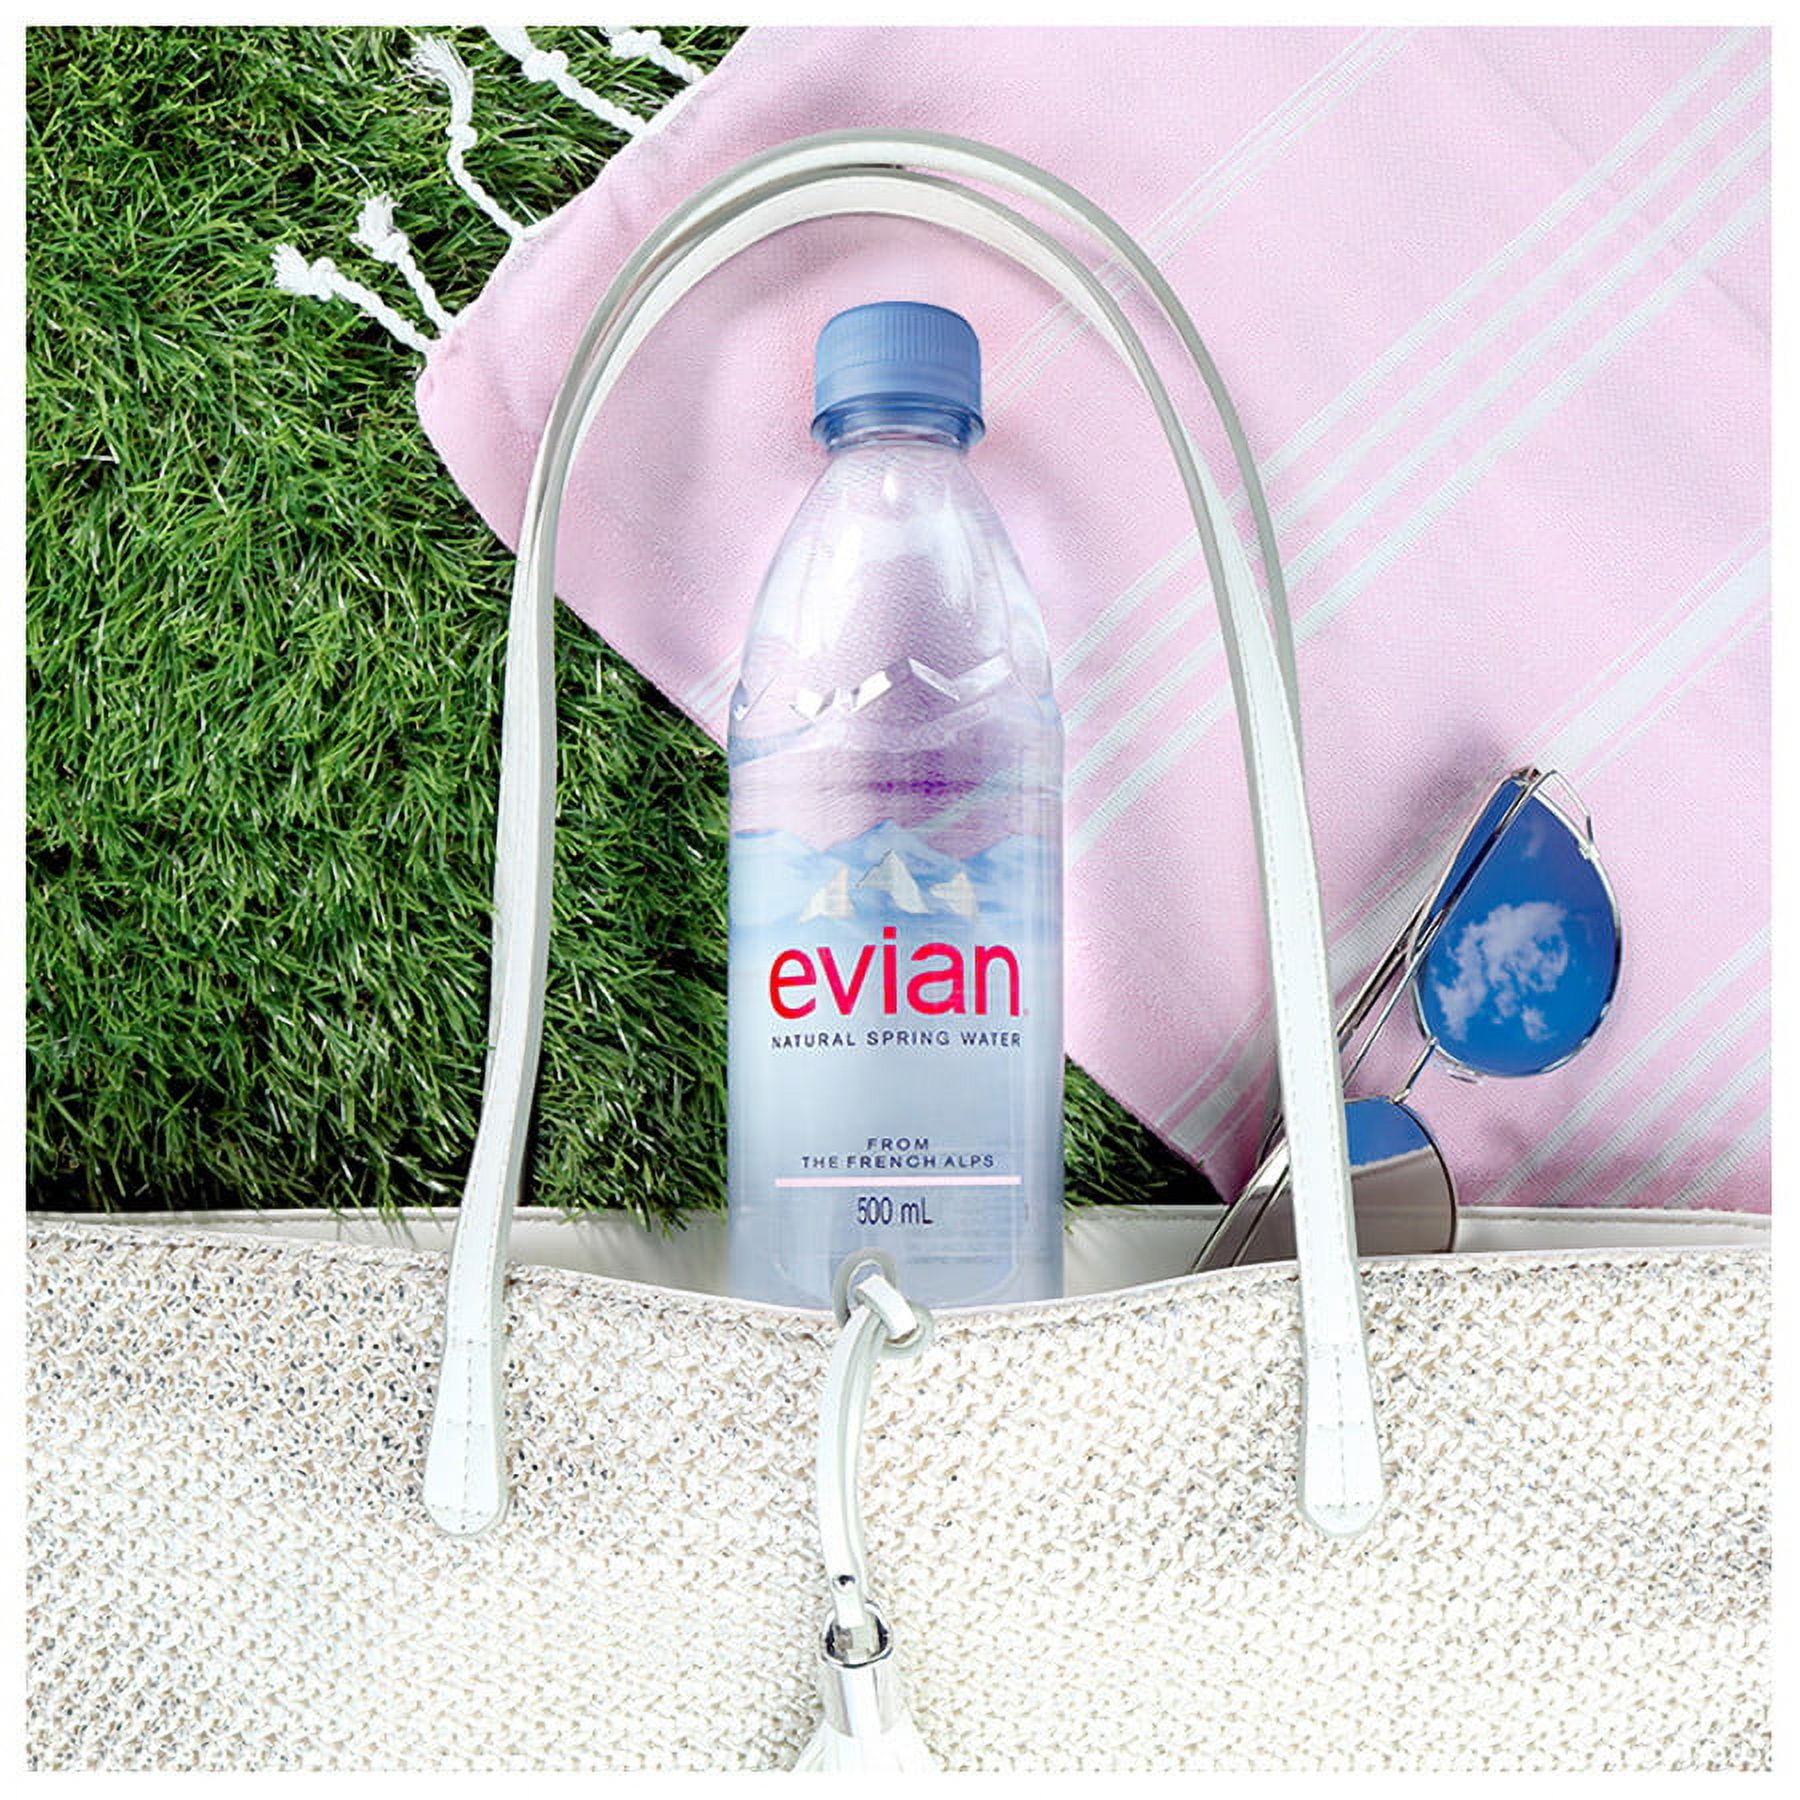 EVIAN MAXI PACK ( bouteille plastique) 150cl , pack de 6